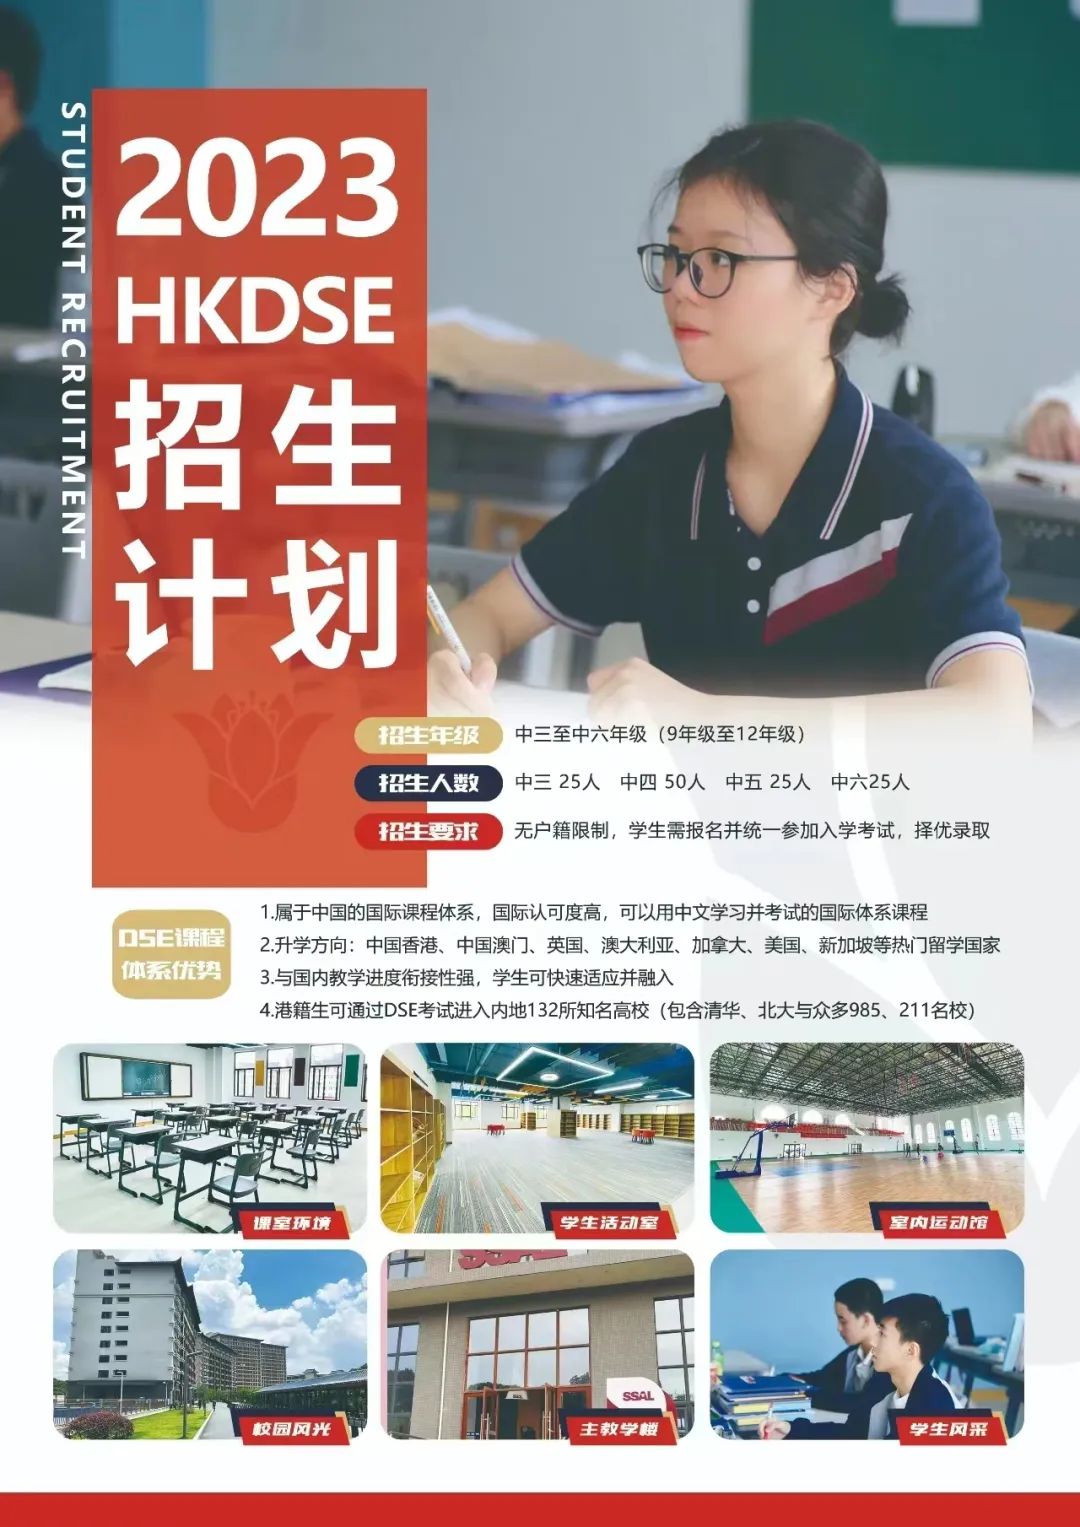 2023年SSAL - HKDSE国际课程秋季招生简章